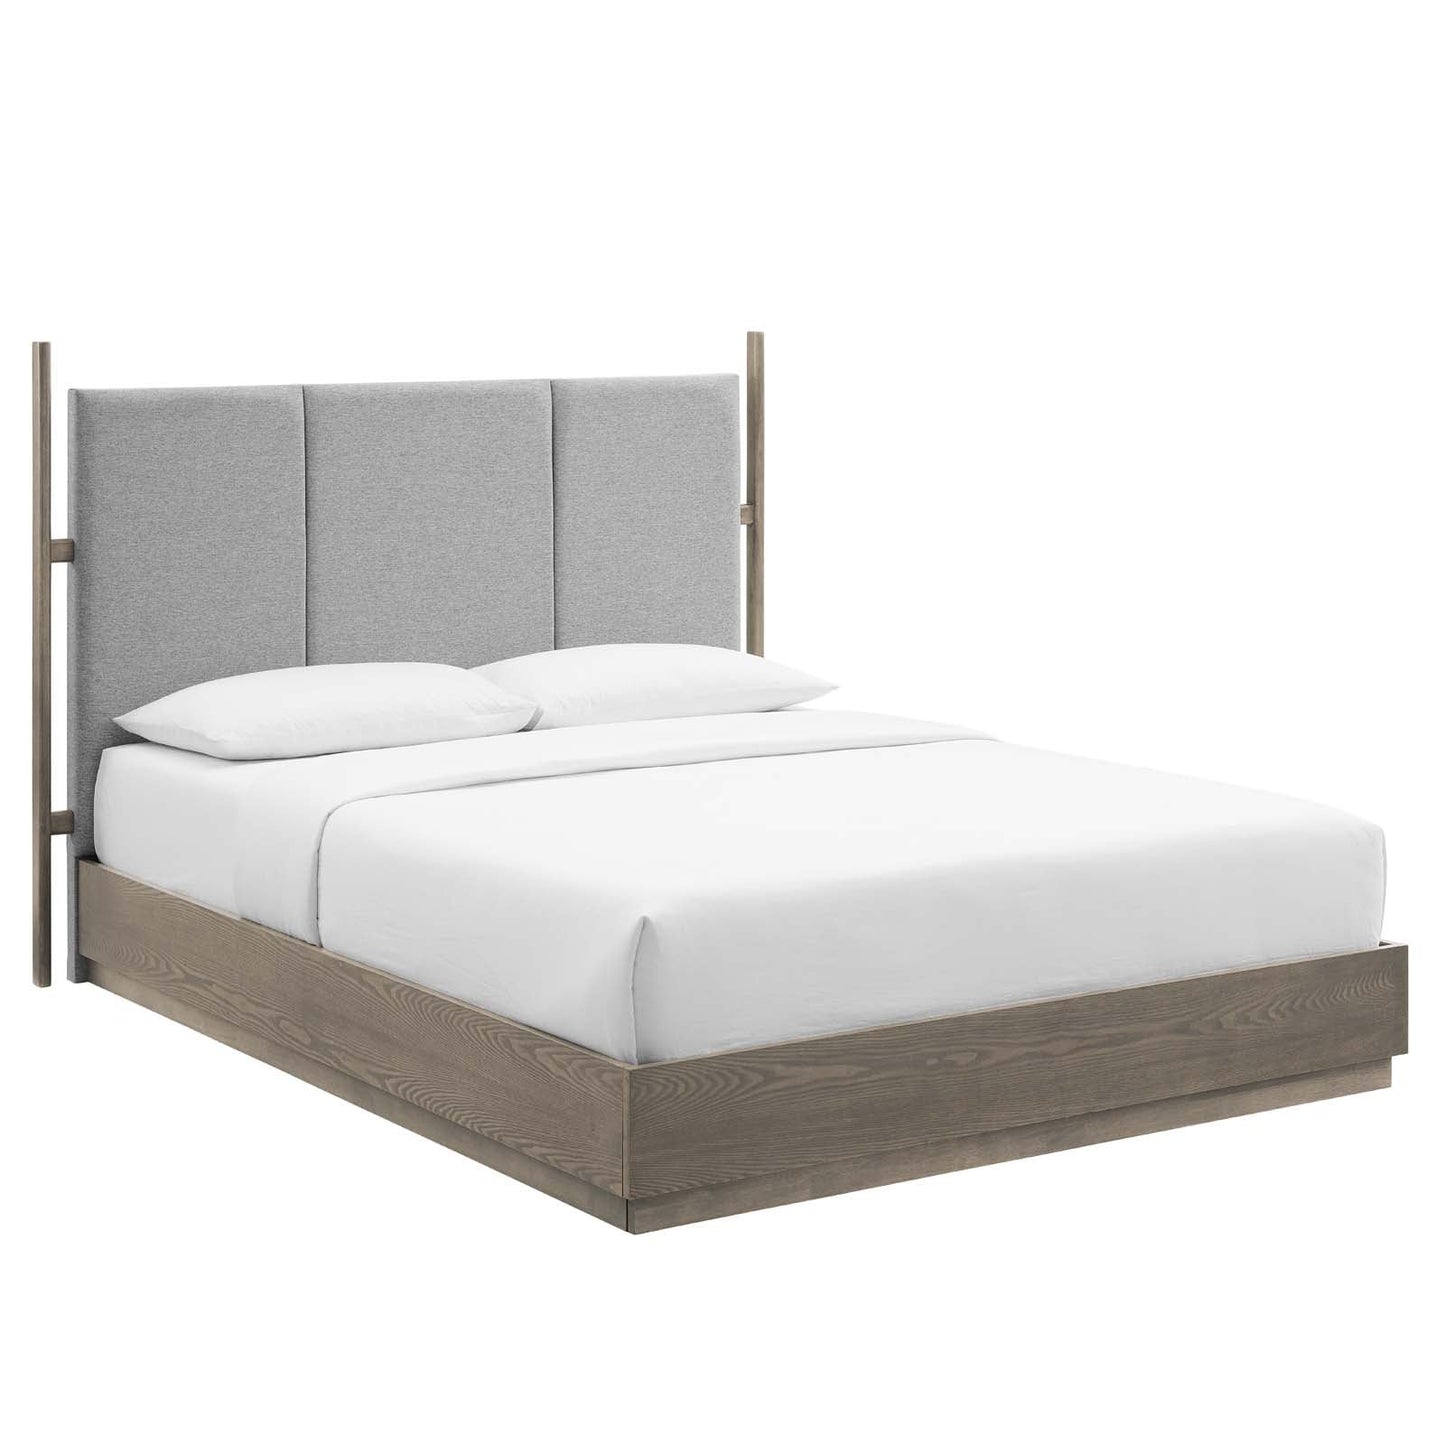 Modway Bedroom Furniture Sets Merritt 3 Piece Upholstered Queen Bedroom Set MOD-6955-OAK